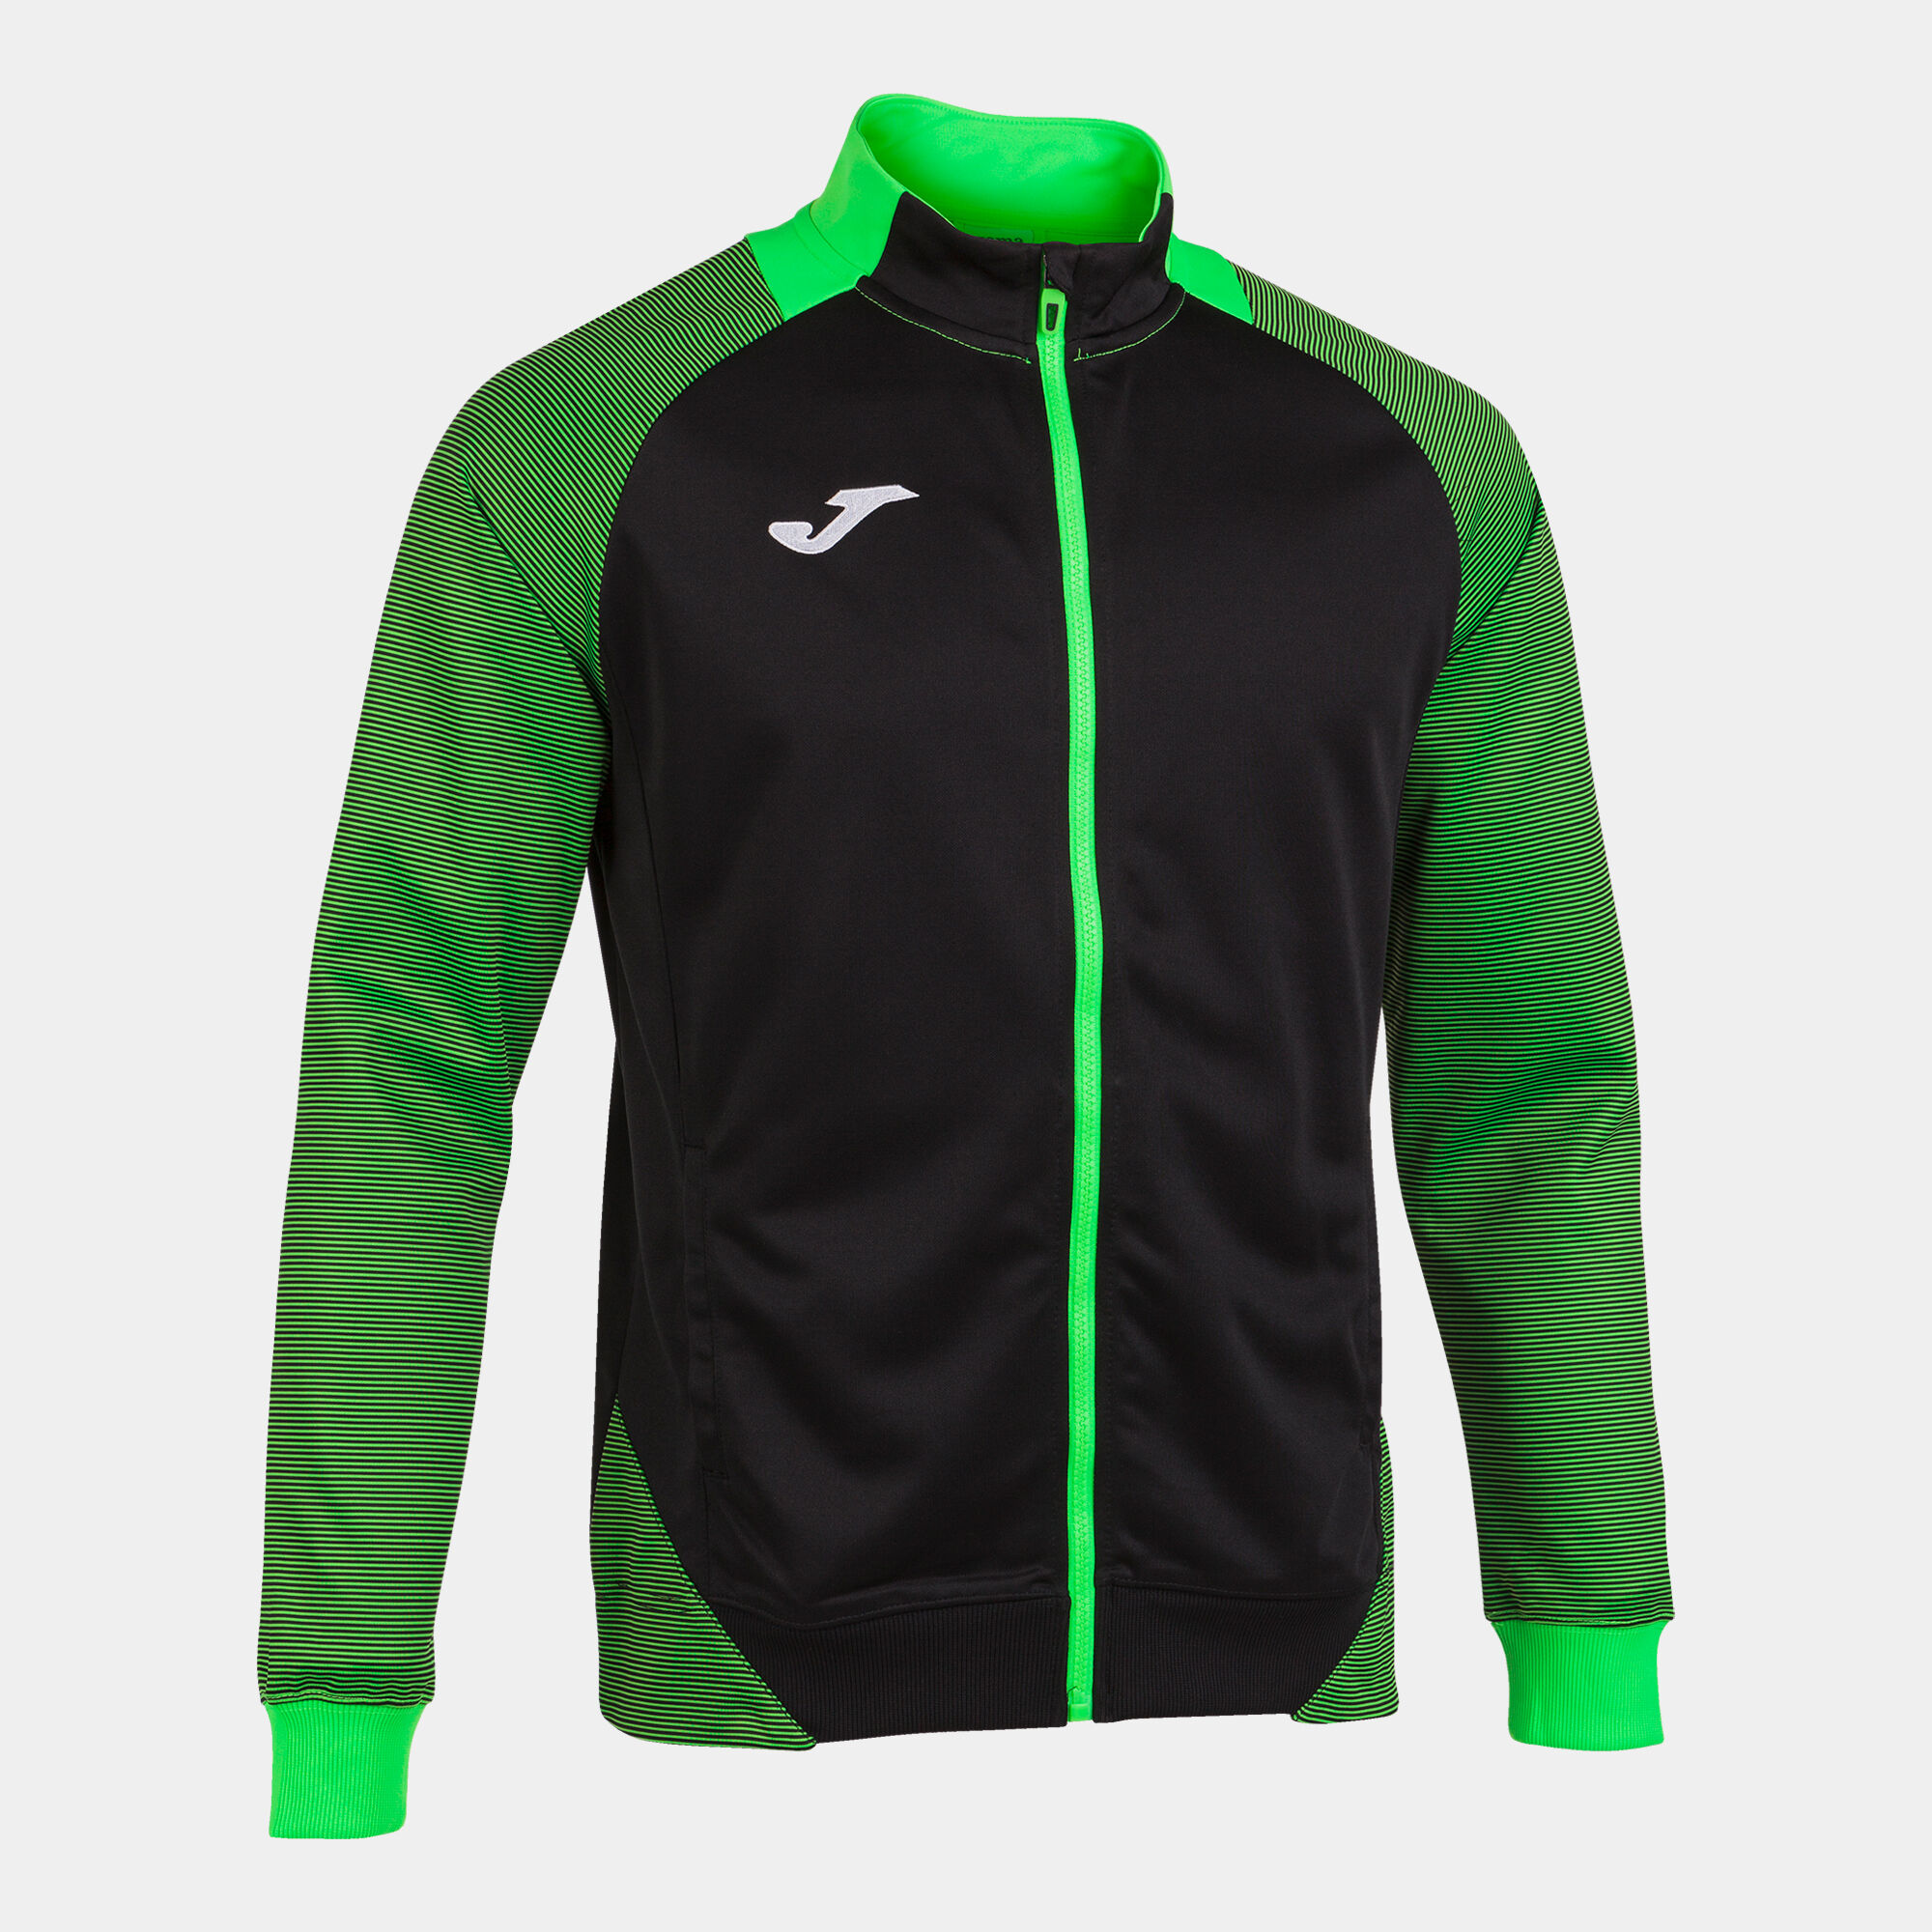 Jachetă bărbaȚi Essential II negru verde fosforescent